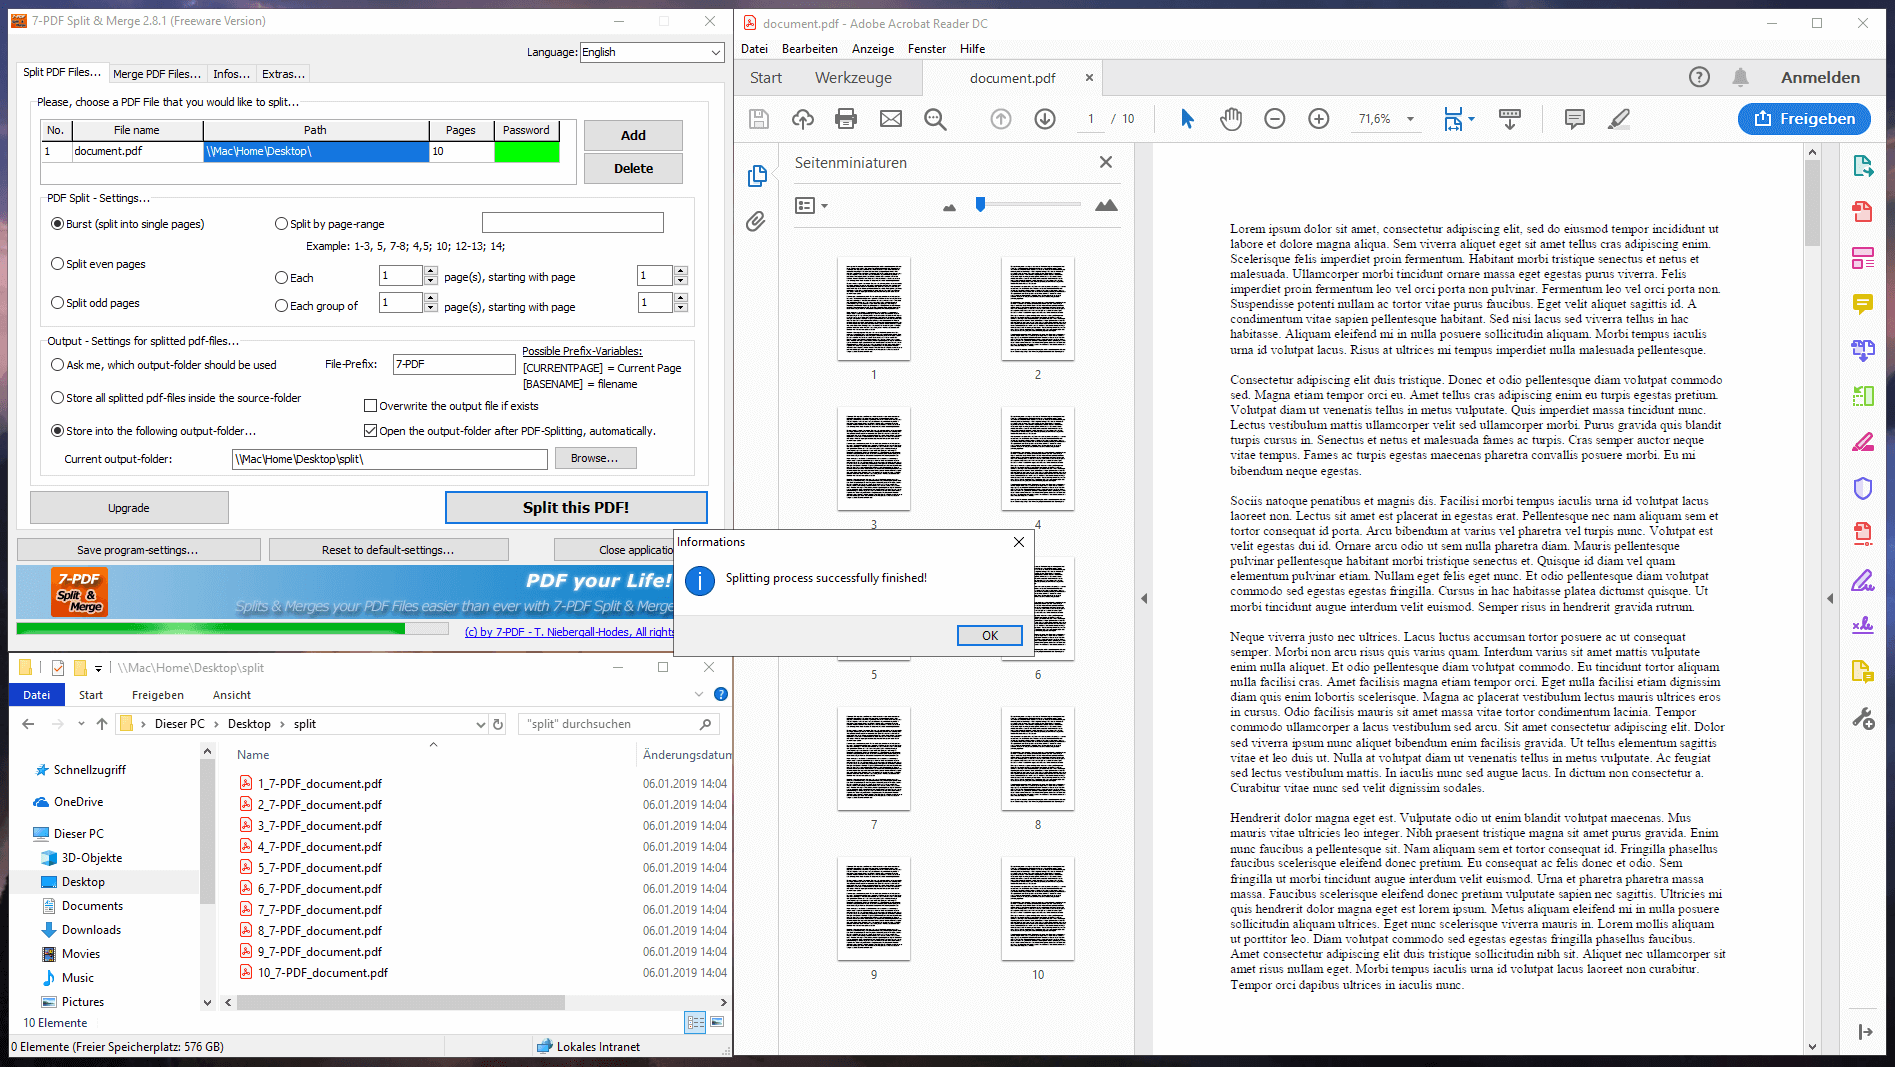 Split PDF Free